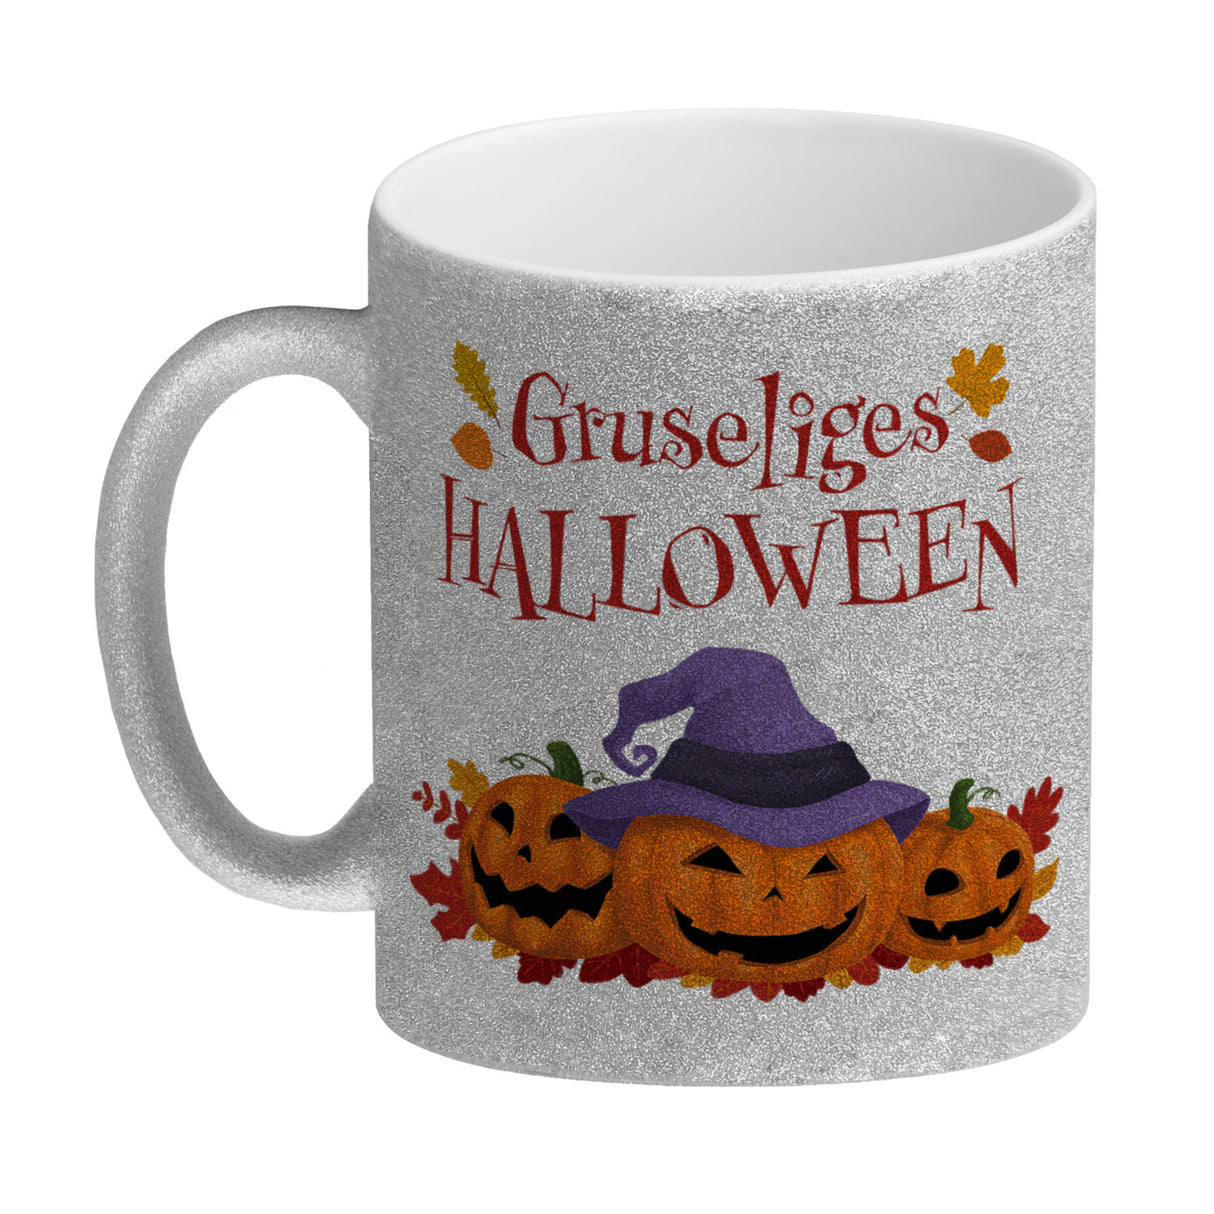 Gruseliges Halloween Kaffeebecher mit grinsenden Kürbissen